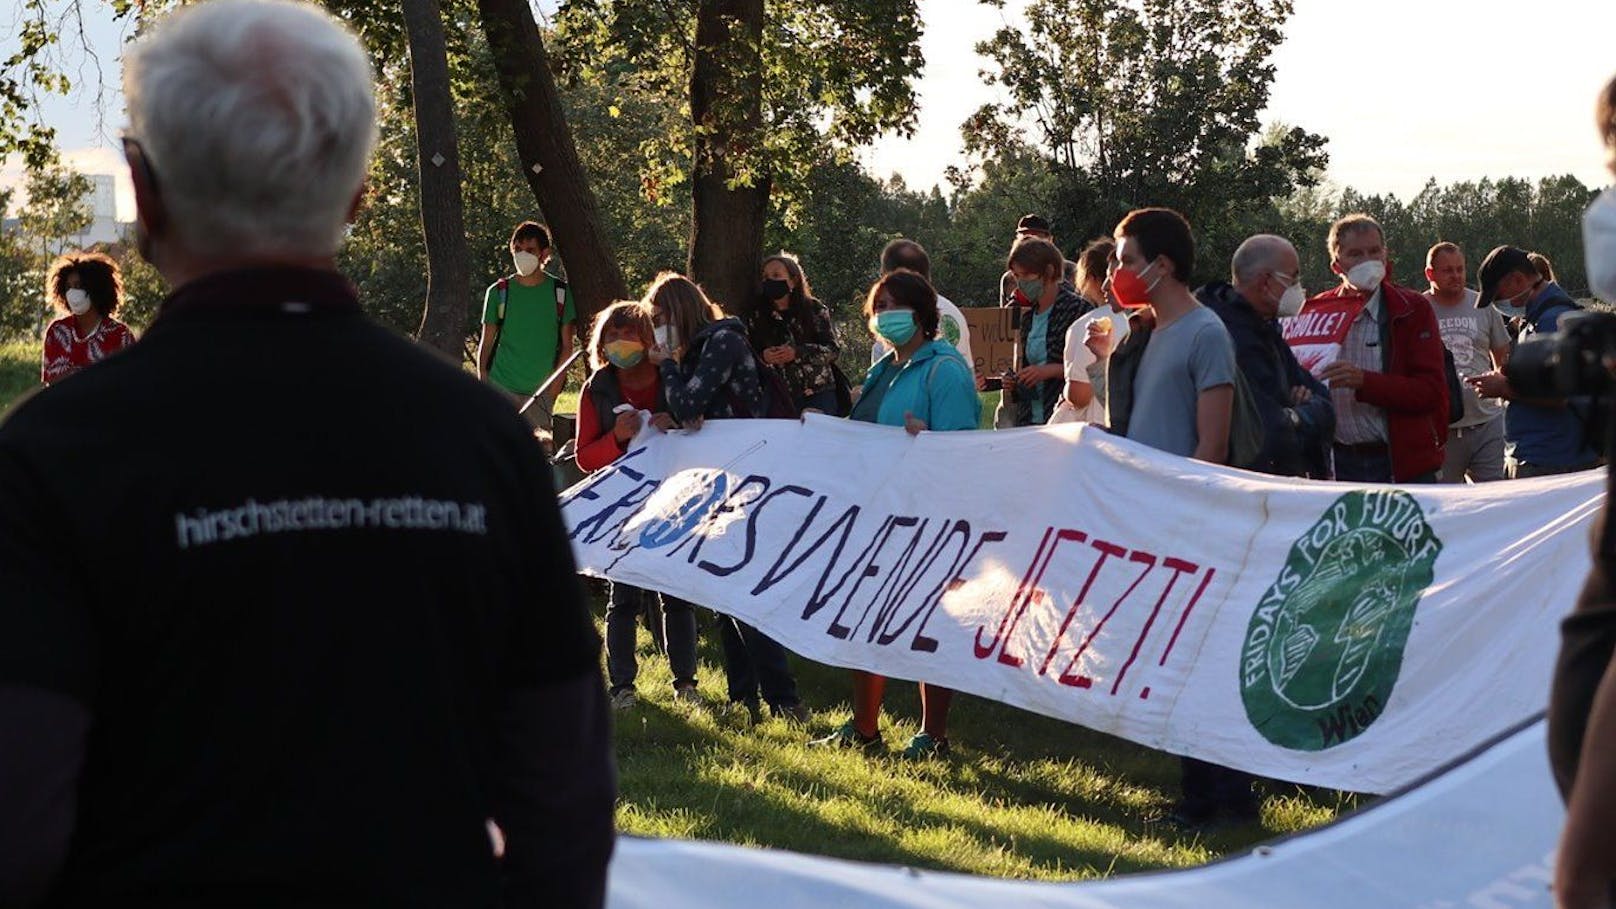 Klimaaktivisten haben in der Donaustadt ein "Camp für die Lobau" errichtet